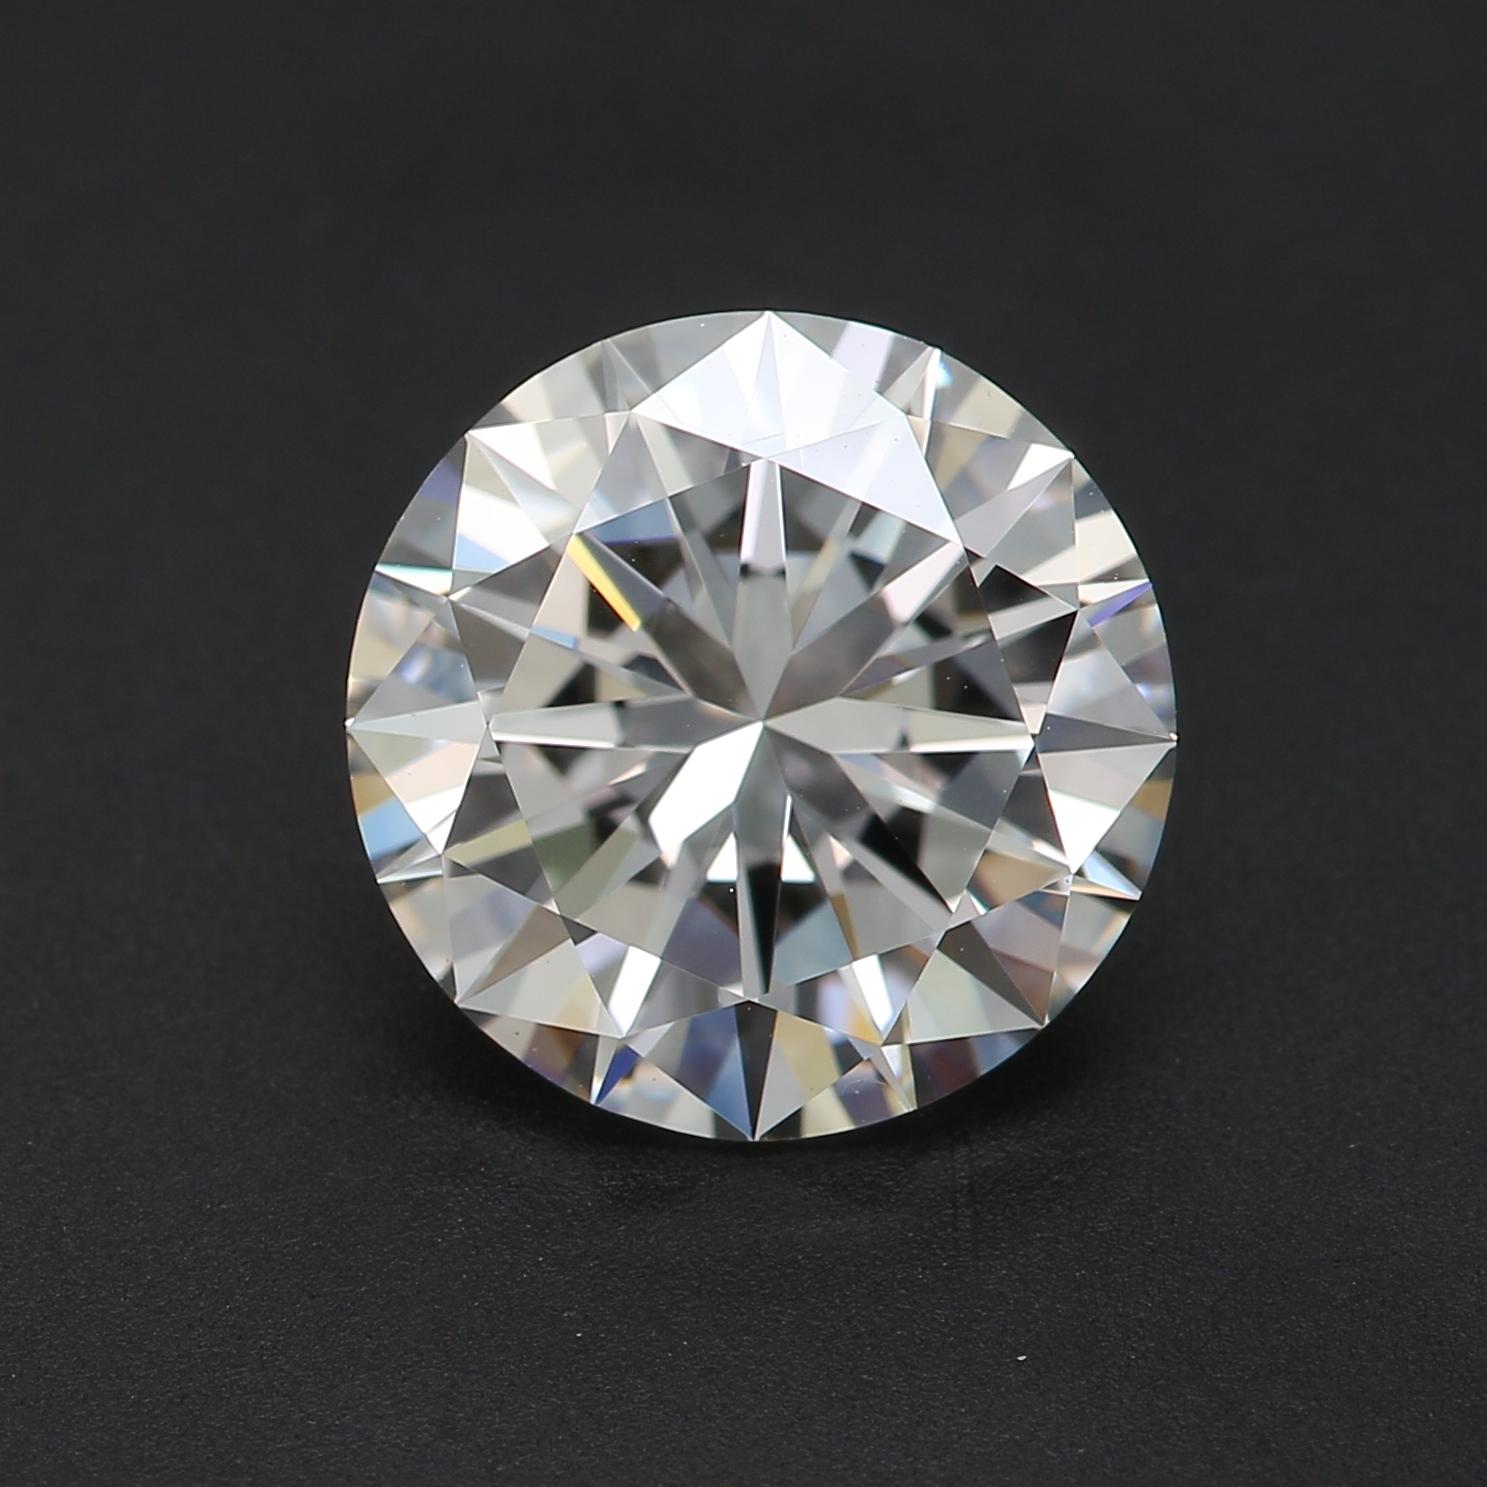 *100% NATÜRLICHE FANCY-DIAMANTEN*

Diamant Details

➛ Form: Rund
➛ Farbgrad: E
➛ Karat: 2.02
➛ Klarheit: VVS1
➛ GIA zertifiziert 

^MERKMALE DES DIAMANTEN^

Dieser 2,02-Karat-Diamant ist ein Diamant mit einem Gewicht von etwa 404 Milligramm. Das